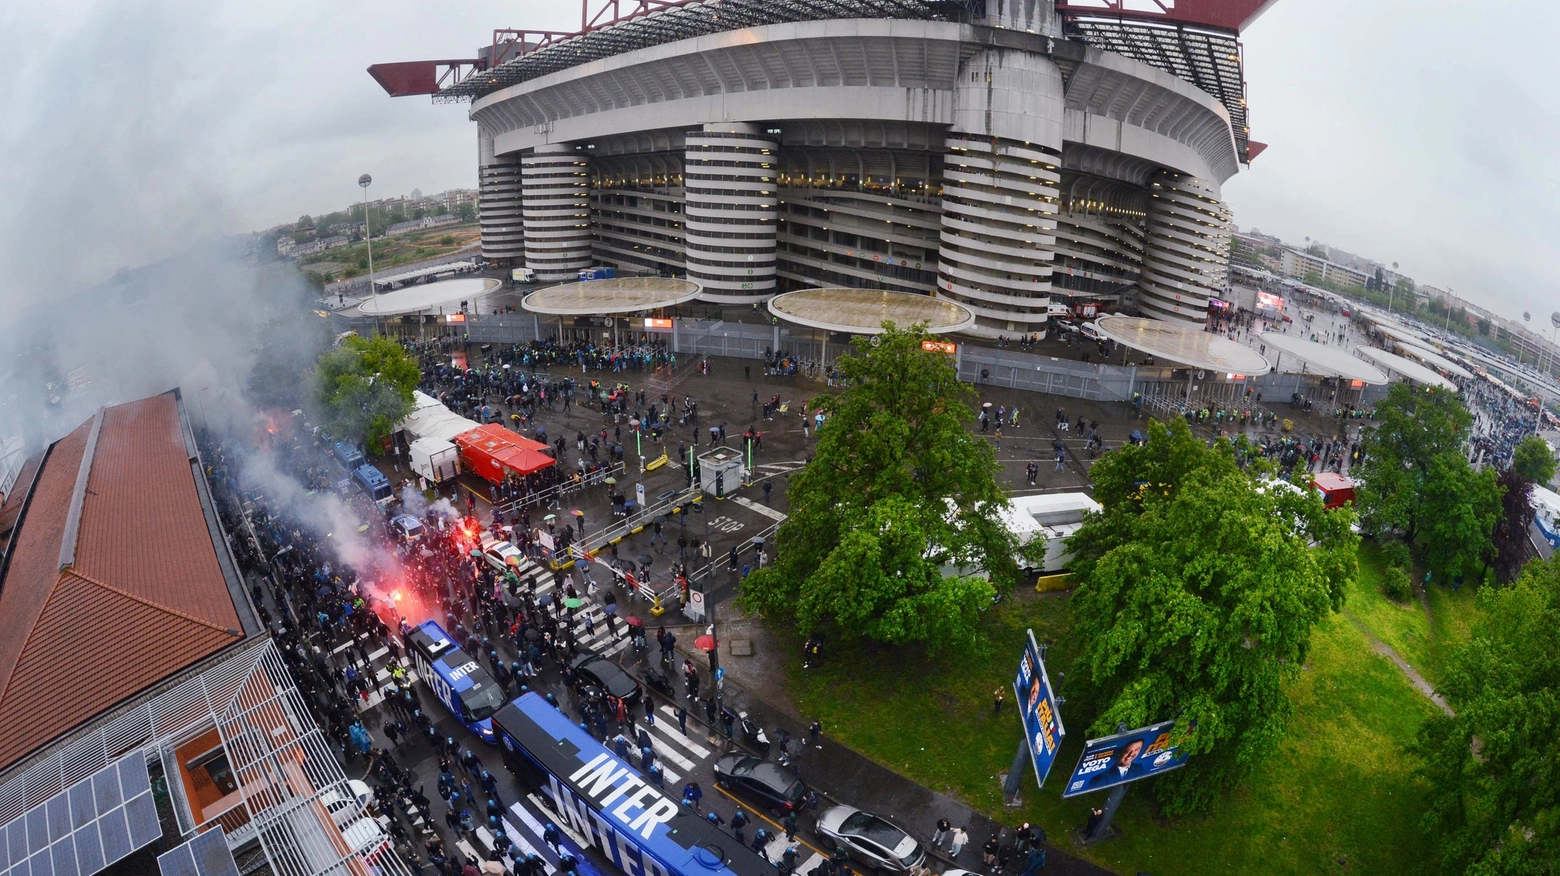 Domenica 29, dopo la partita con il Torino, partenza alle 15.30 dallo stadio: tutte le info utili